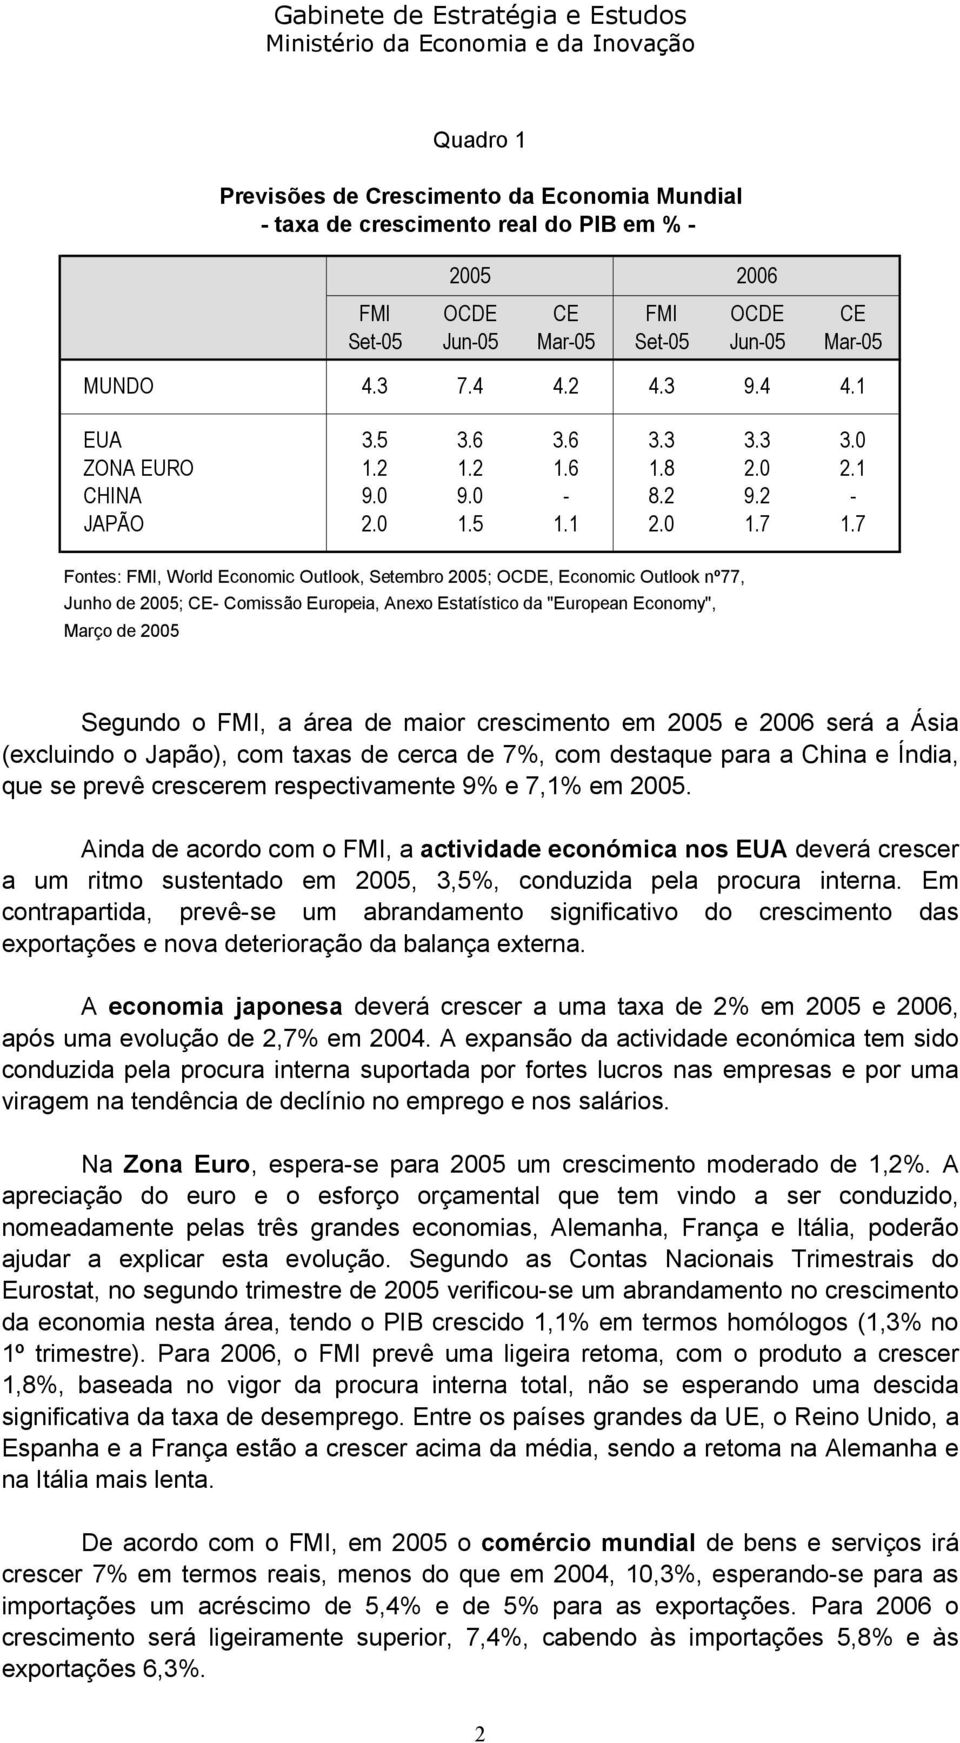 7 Fontes: FMI, World Economic Outlook, Setembro 2005; OCDE, Economic Outlook nº77, Junho de 2005; CE- Comissão Europeia, Anexo Estatístico da "European Economy", Março de 2005 Segundo o FMI, a área